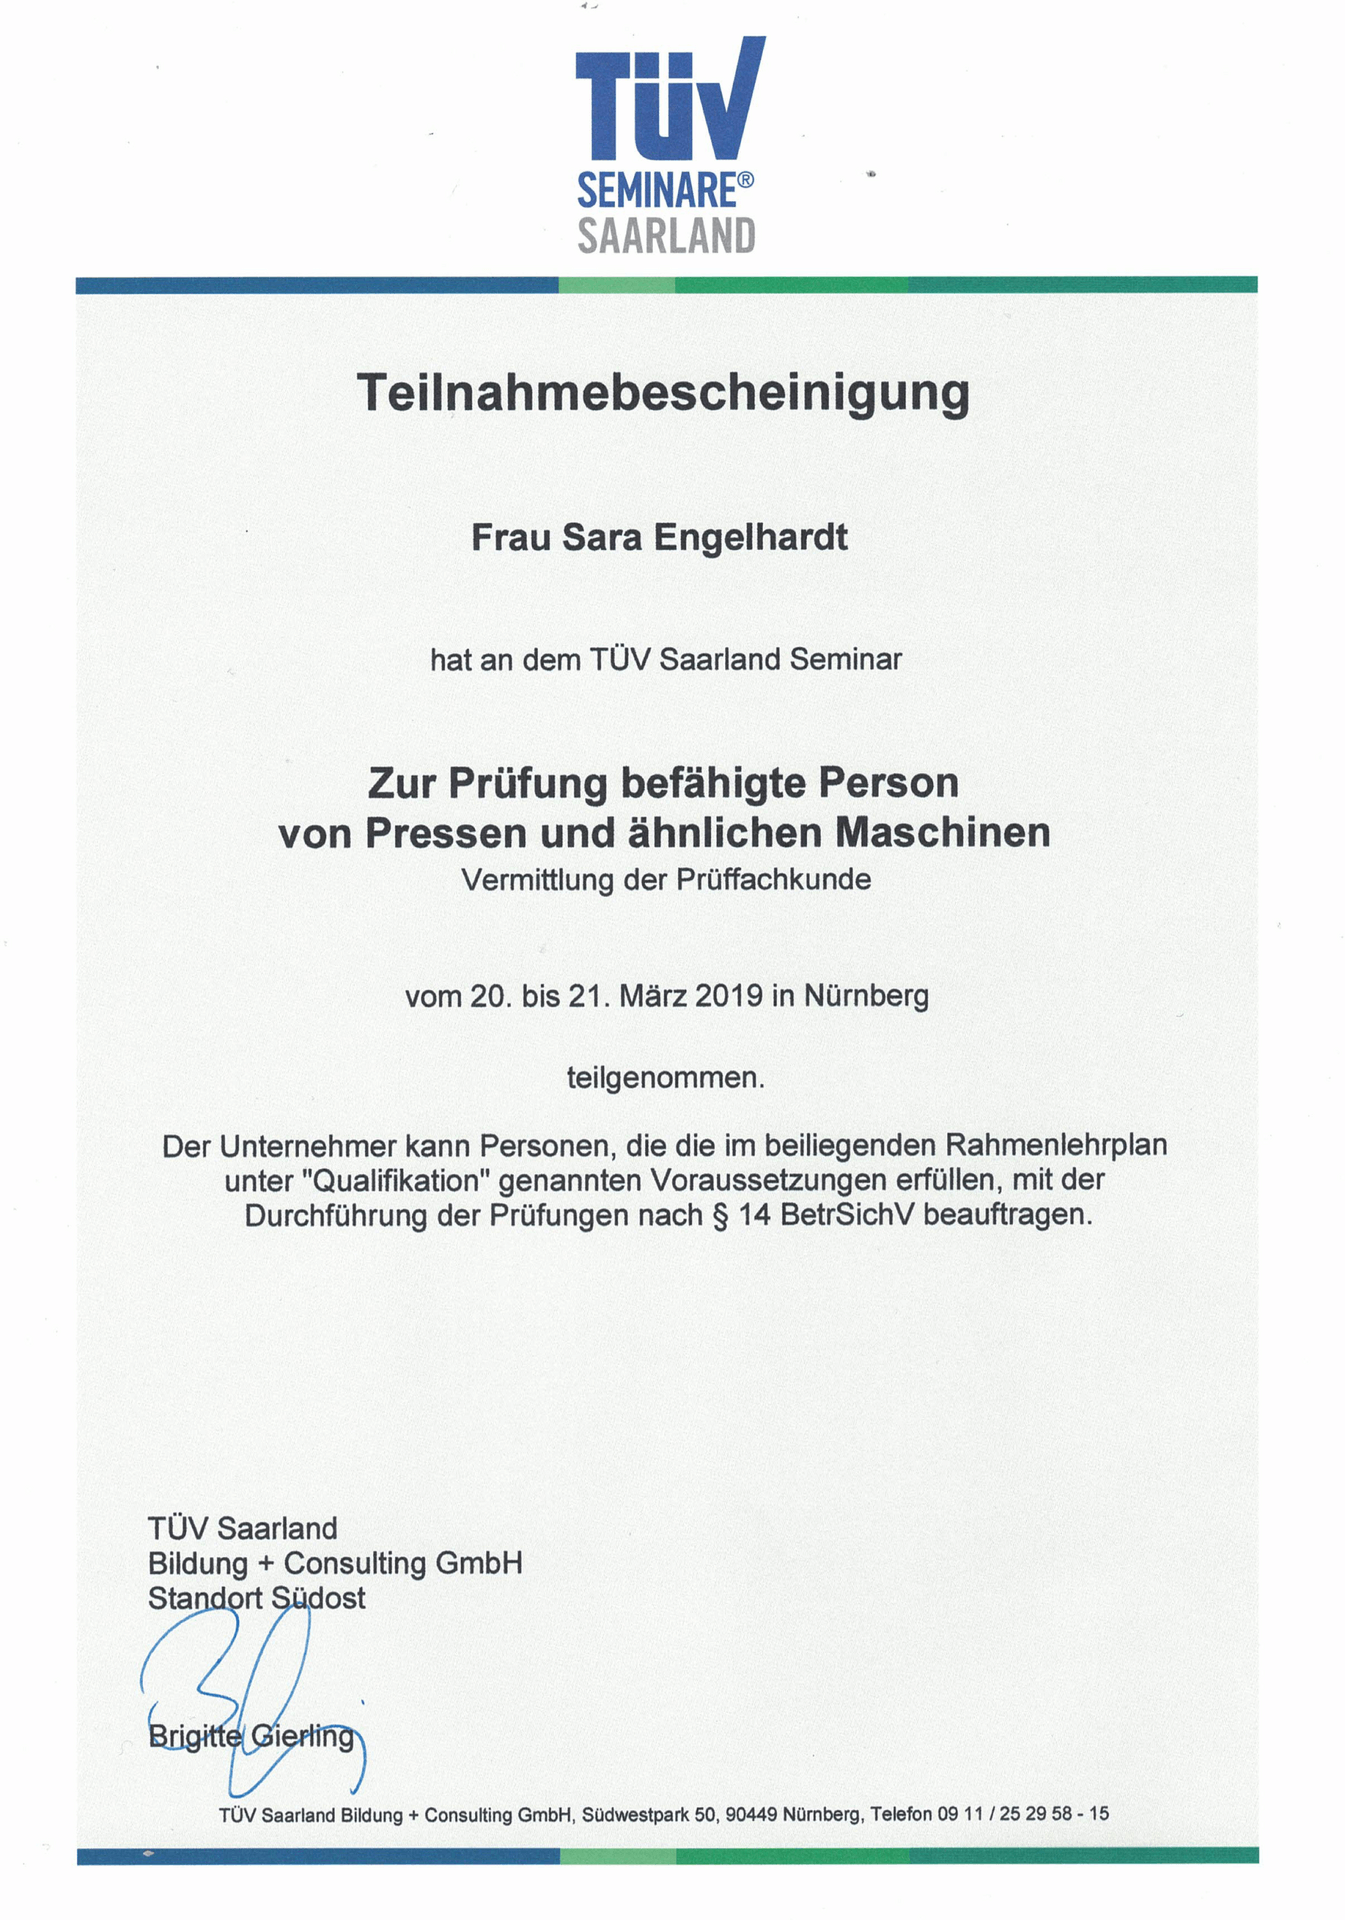 Teilnahmebescheinigung-TÜV-Seminar-befähigte-Person-Pressen-Sara-Engelhardt